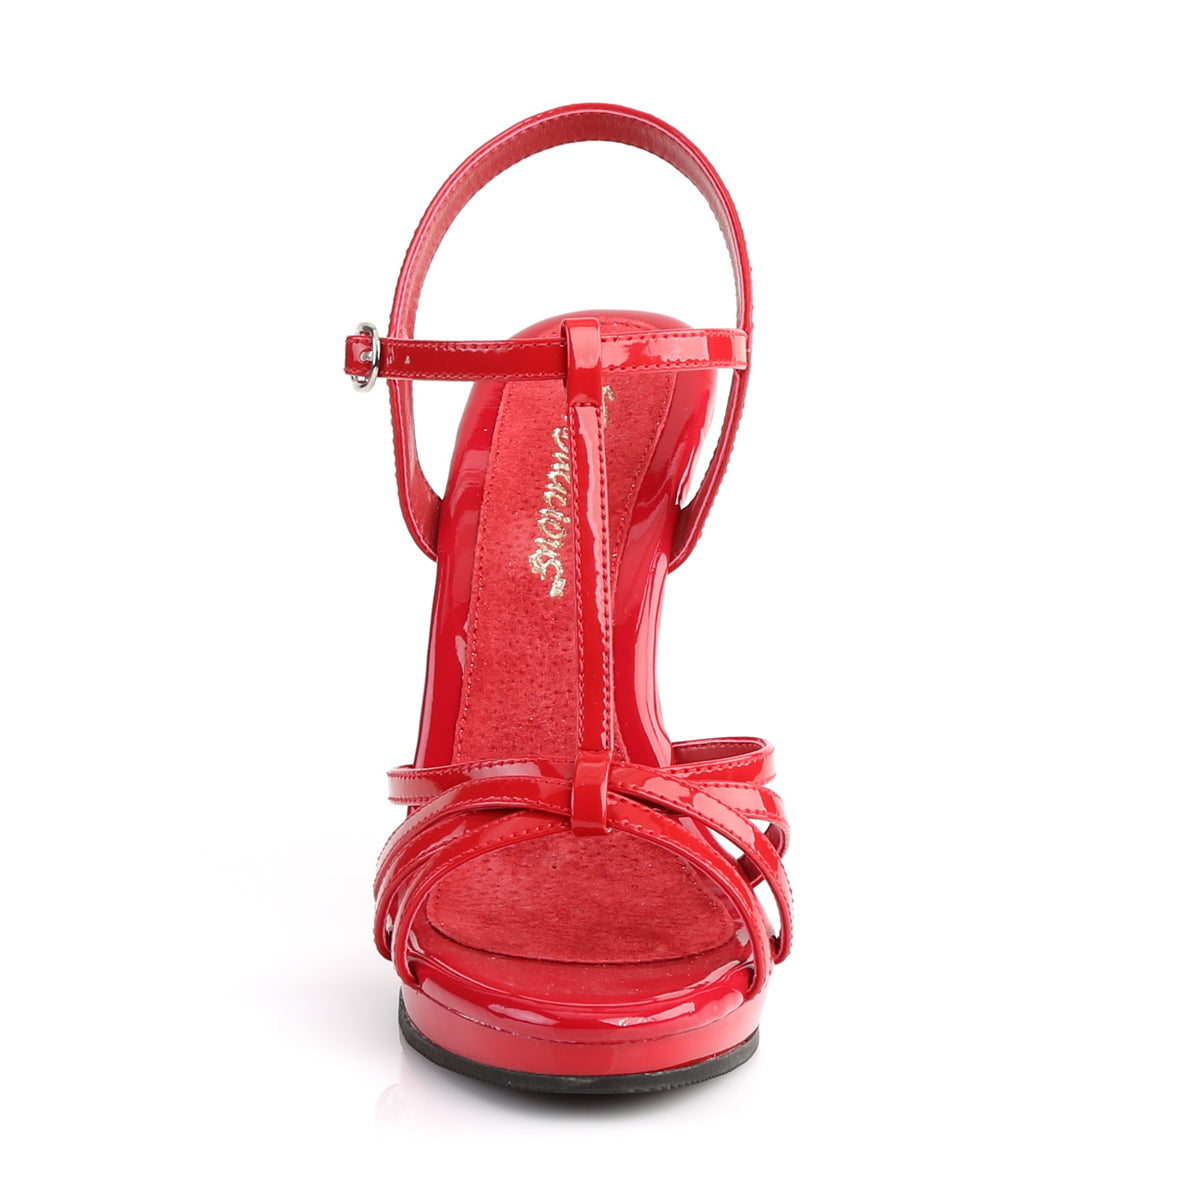 Fabulicious Sandali da donna FLAIR-420 Pat / rosso rosso / rosso